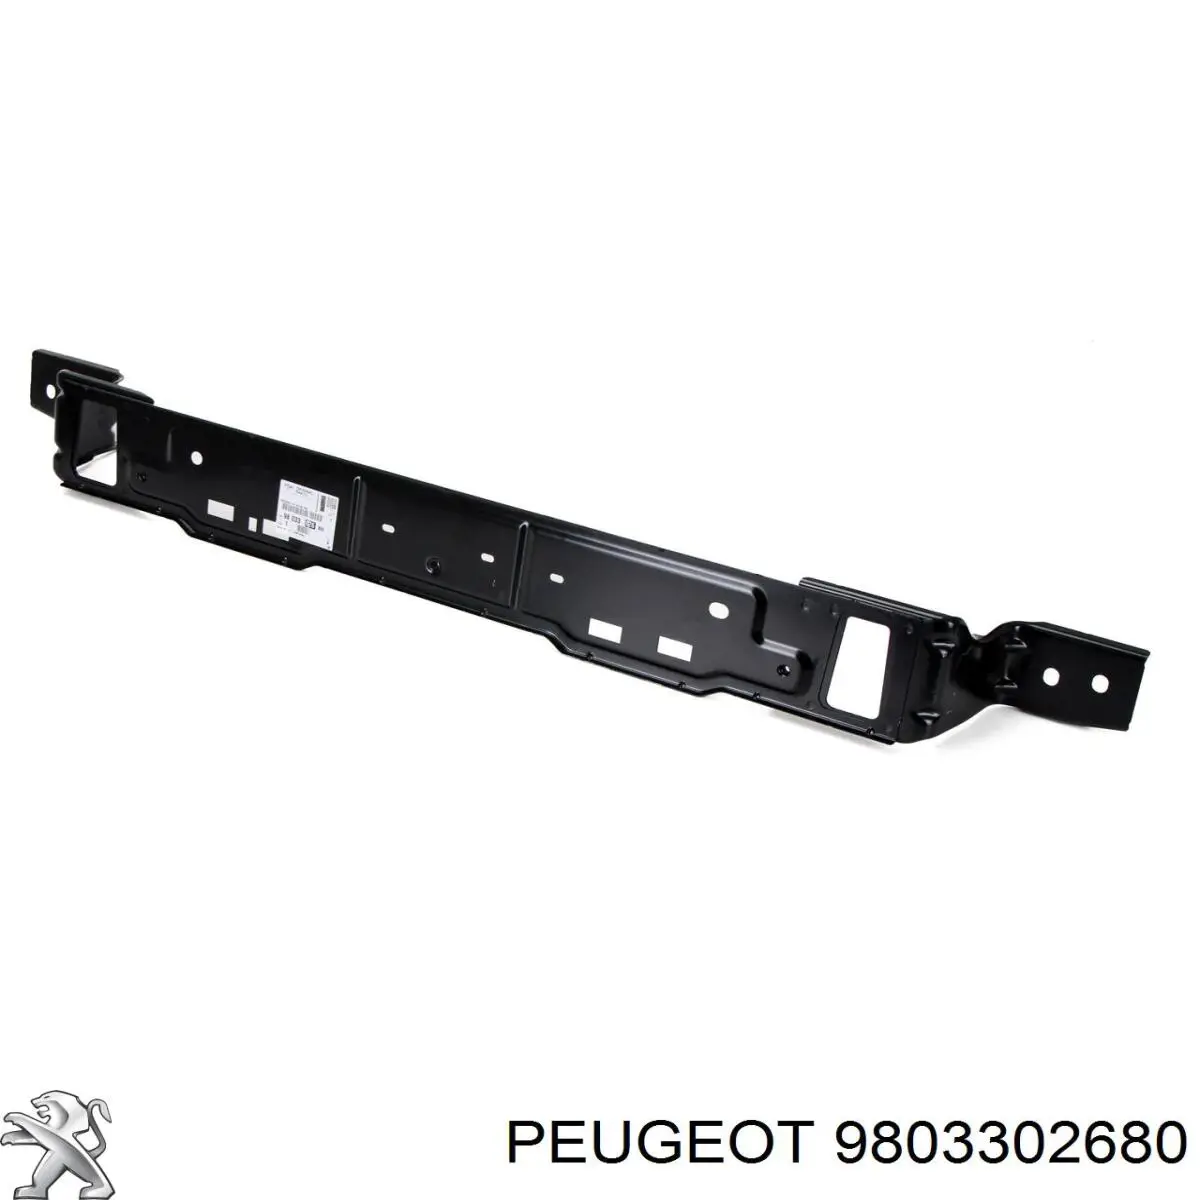 9803302680 Peugeot/Citroen suporte inferior do radiador (painel de montagem de fixação das luzes)